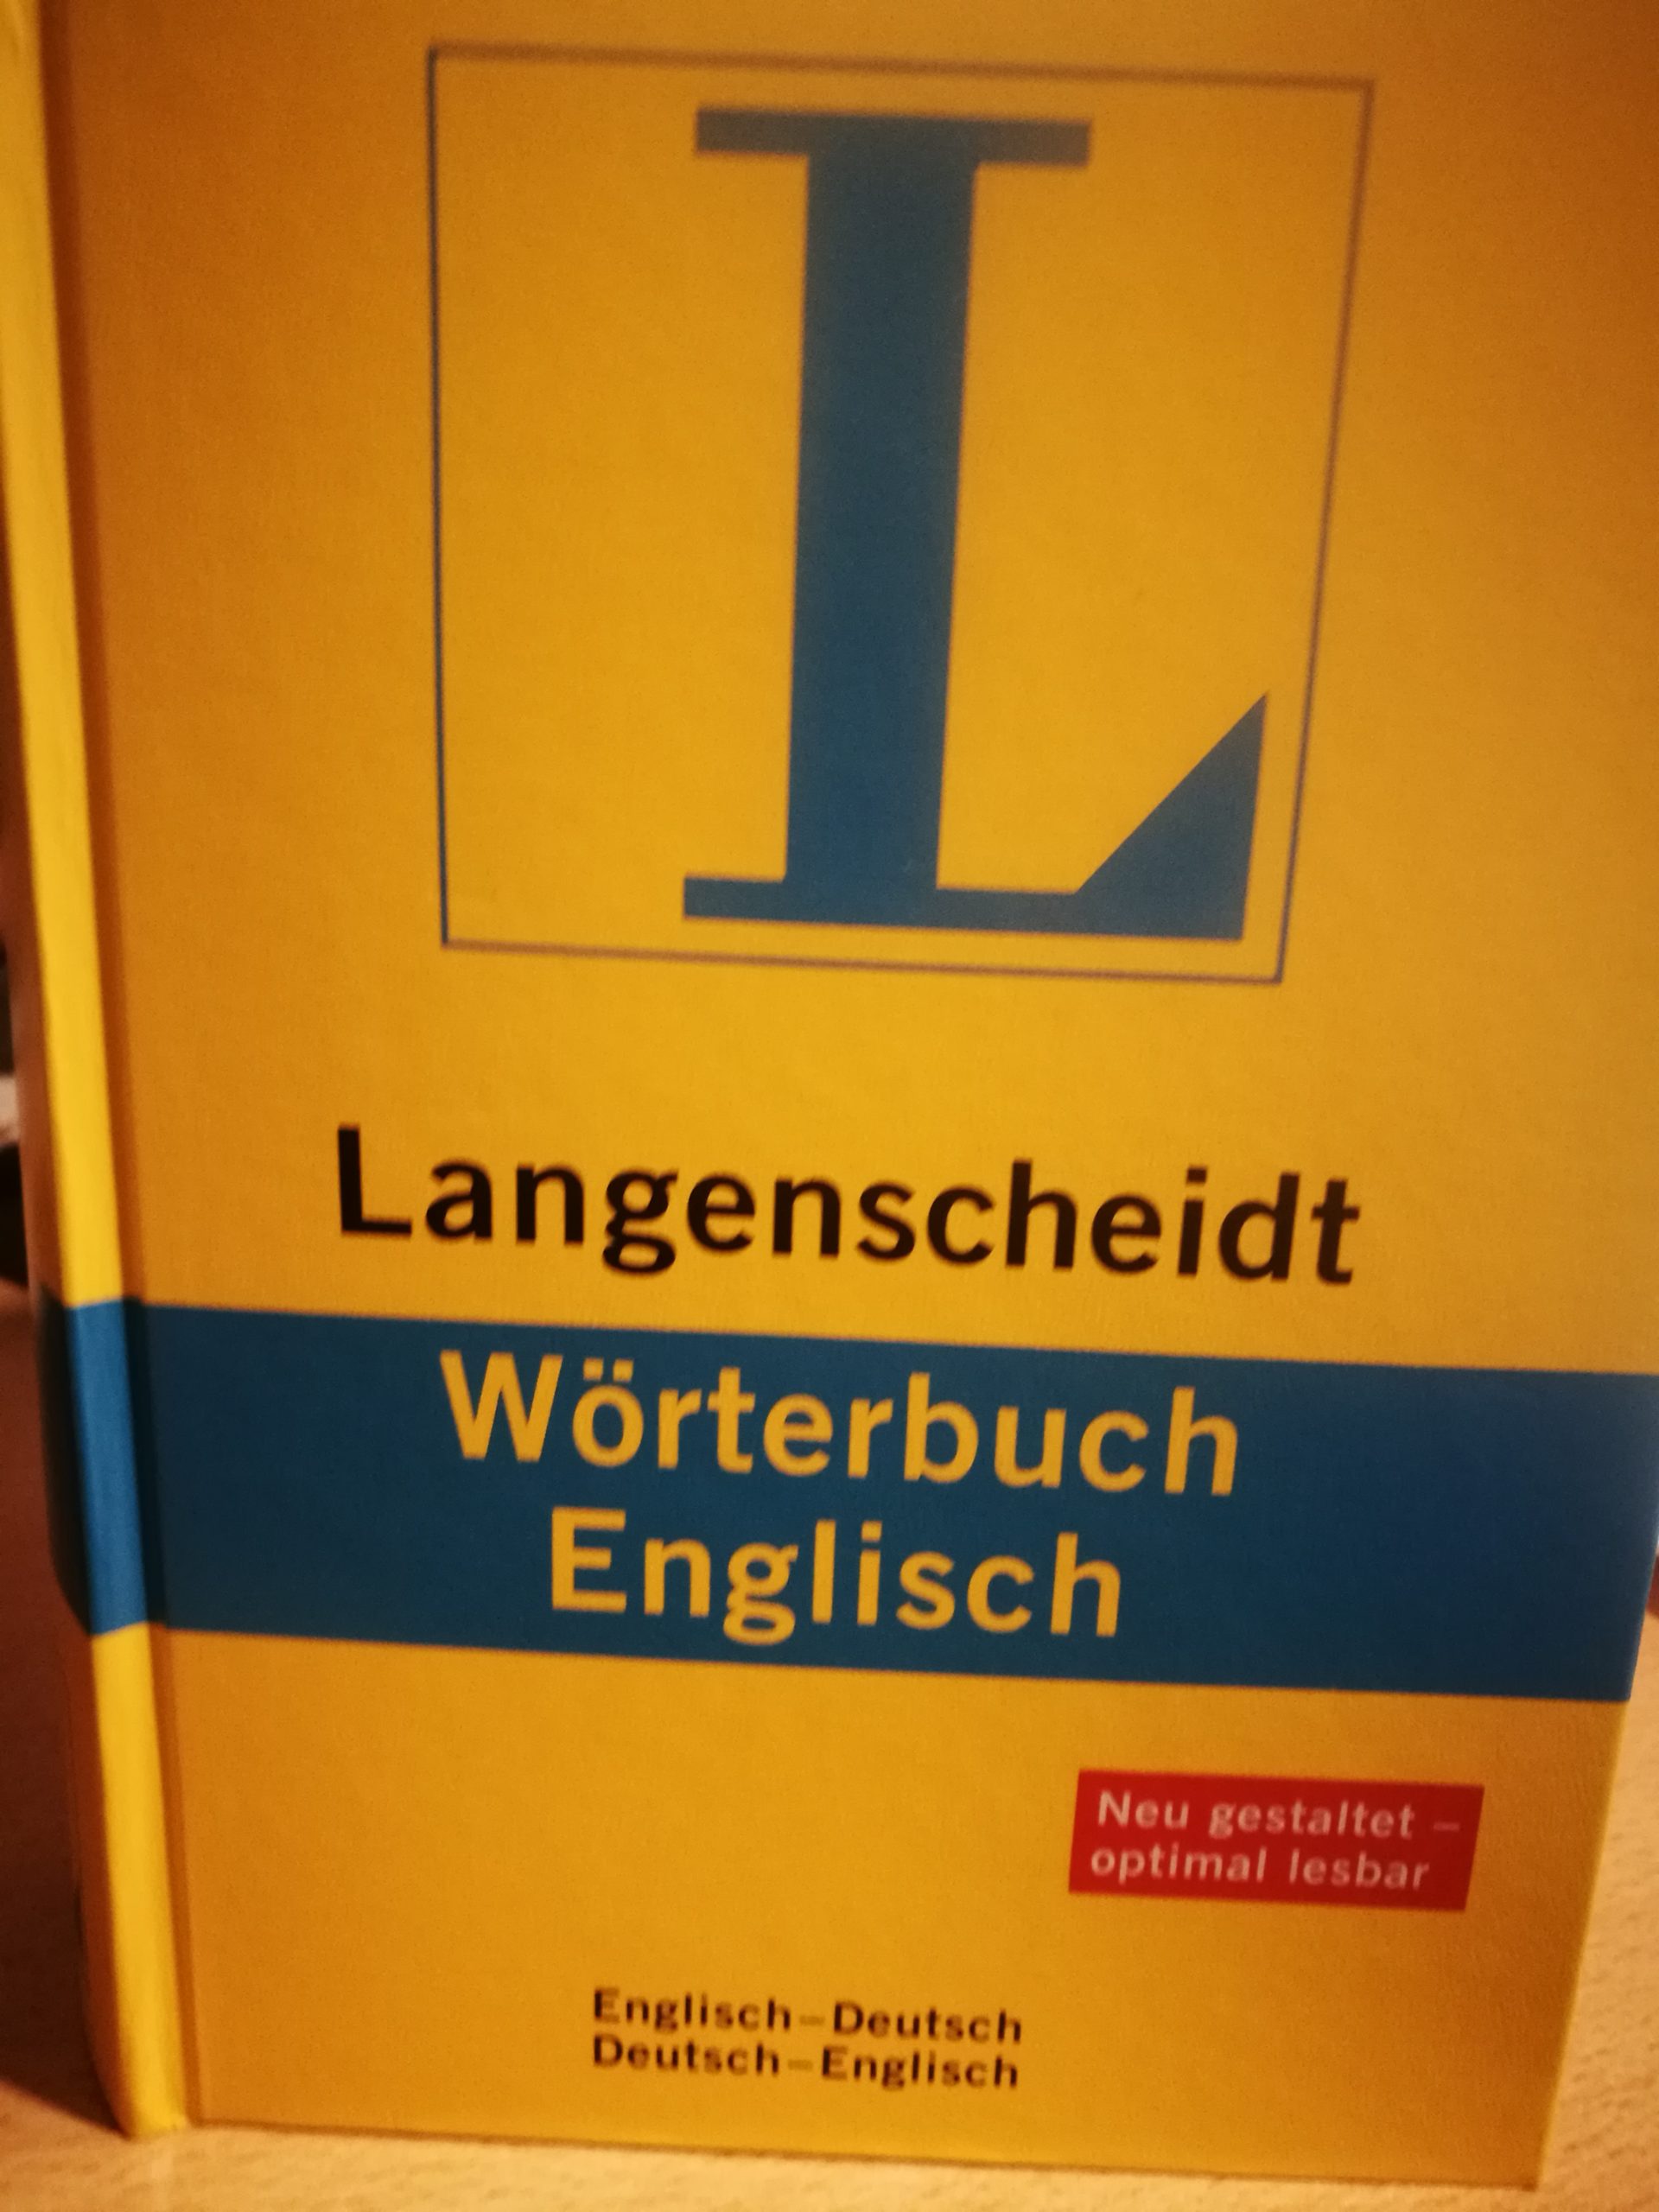 Buch für Übersetzungen Englisch-Deutsch, Deutsch-Englisch